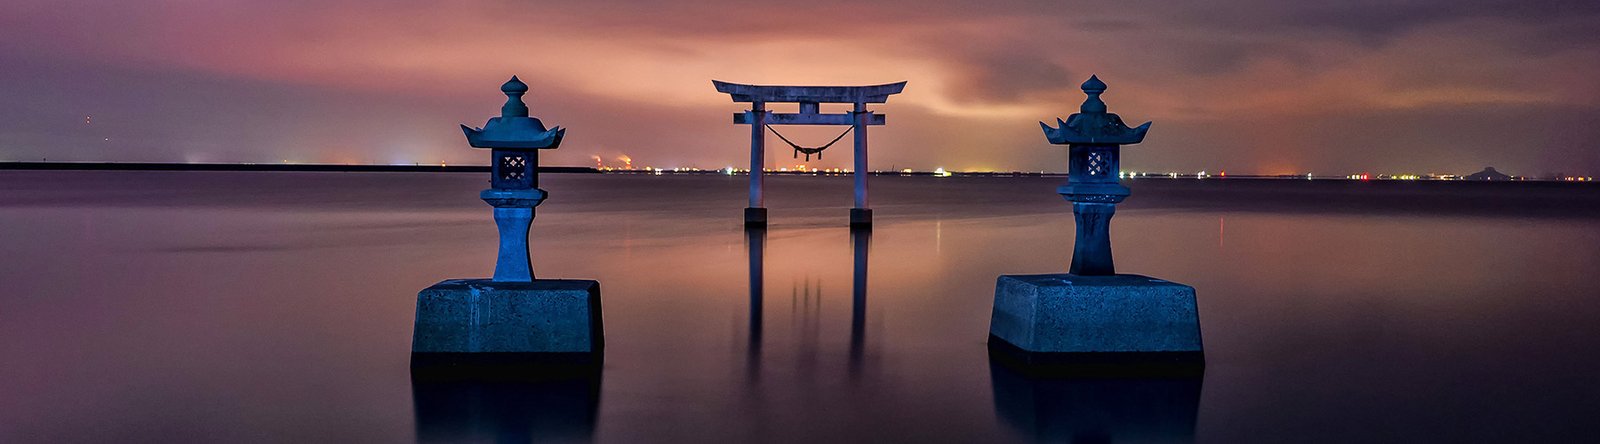 tori gate in sea Japan